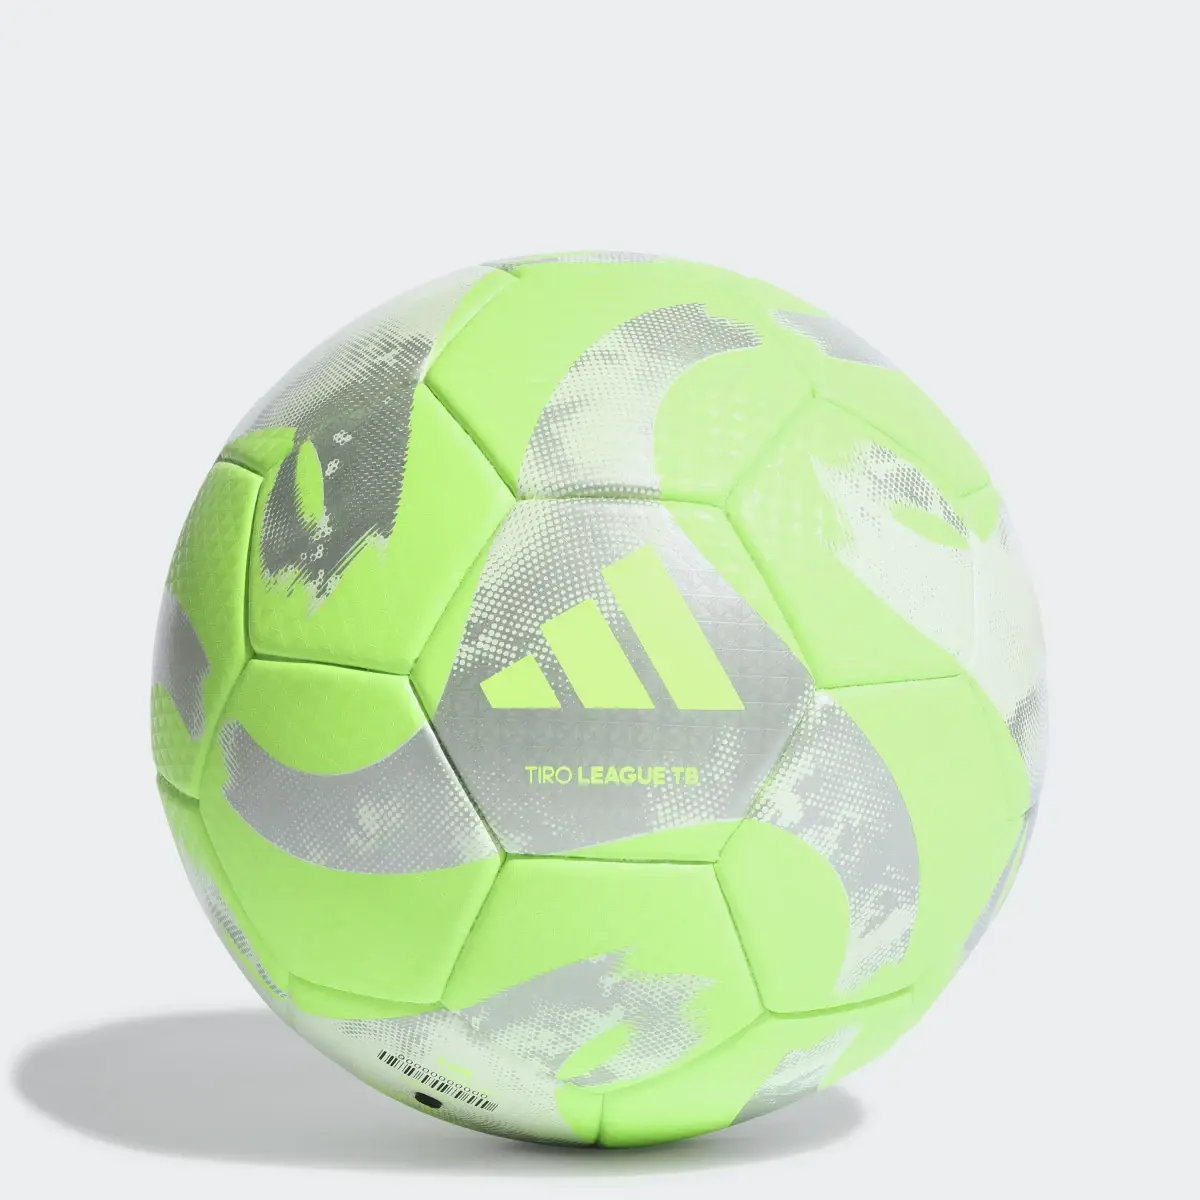 Adidas Ballon thermosoudé Tiro League. 1